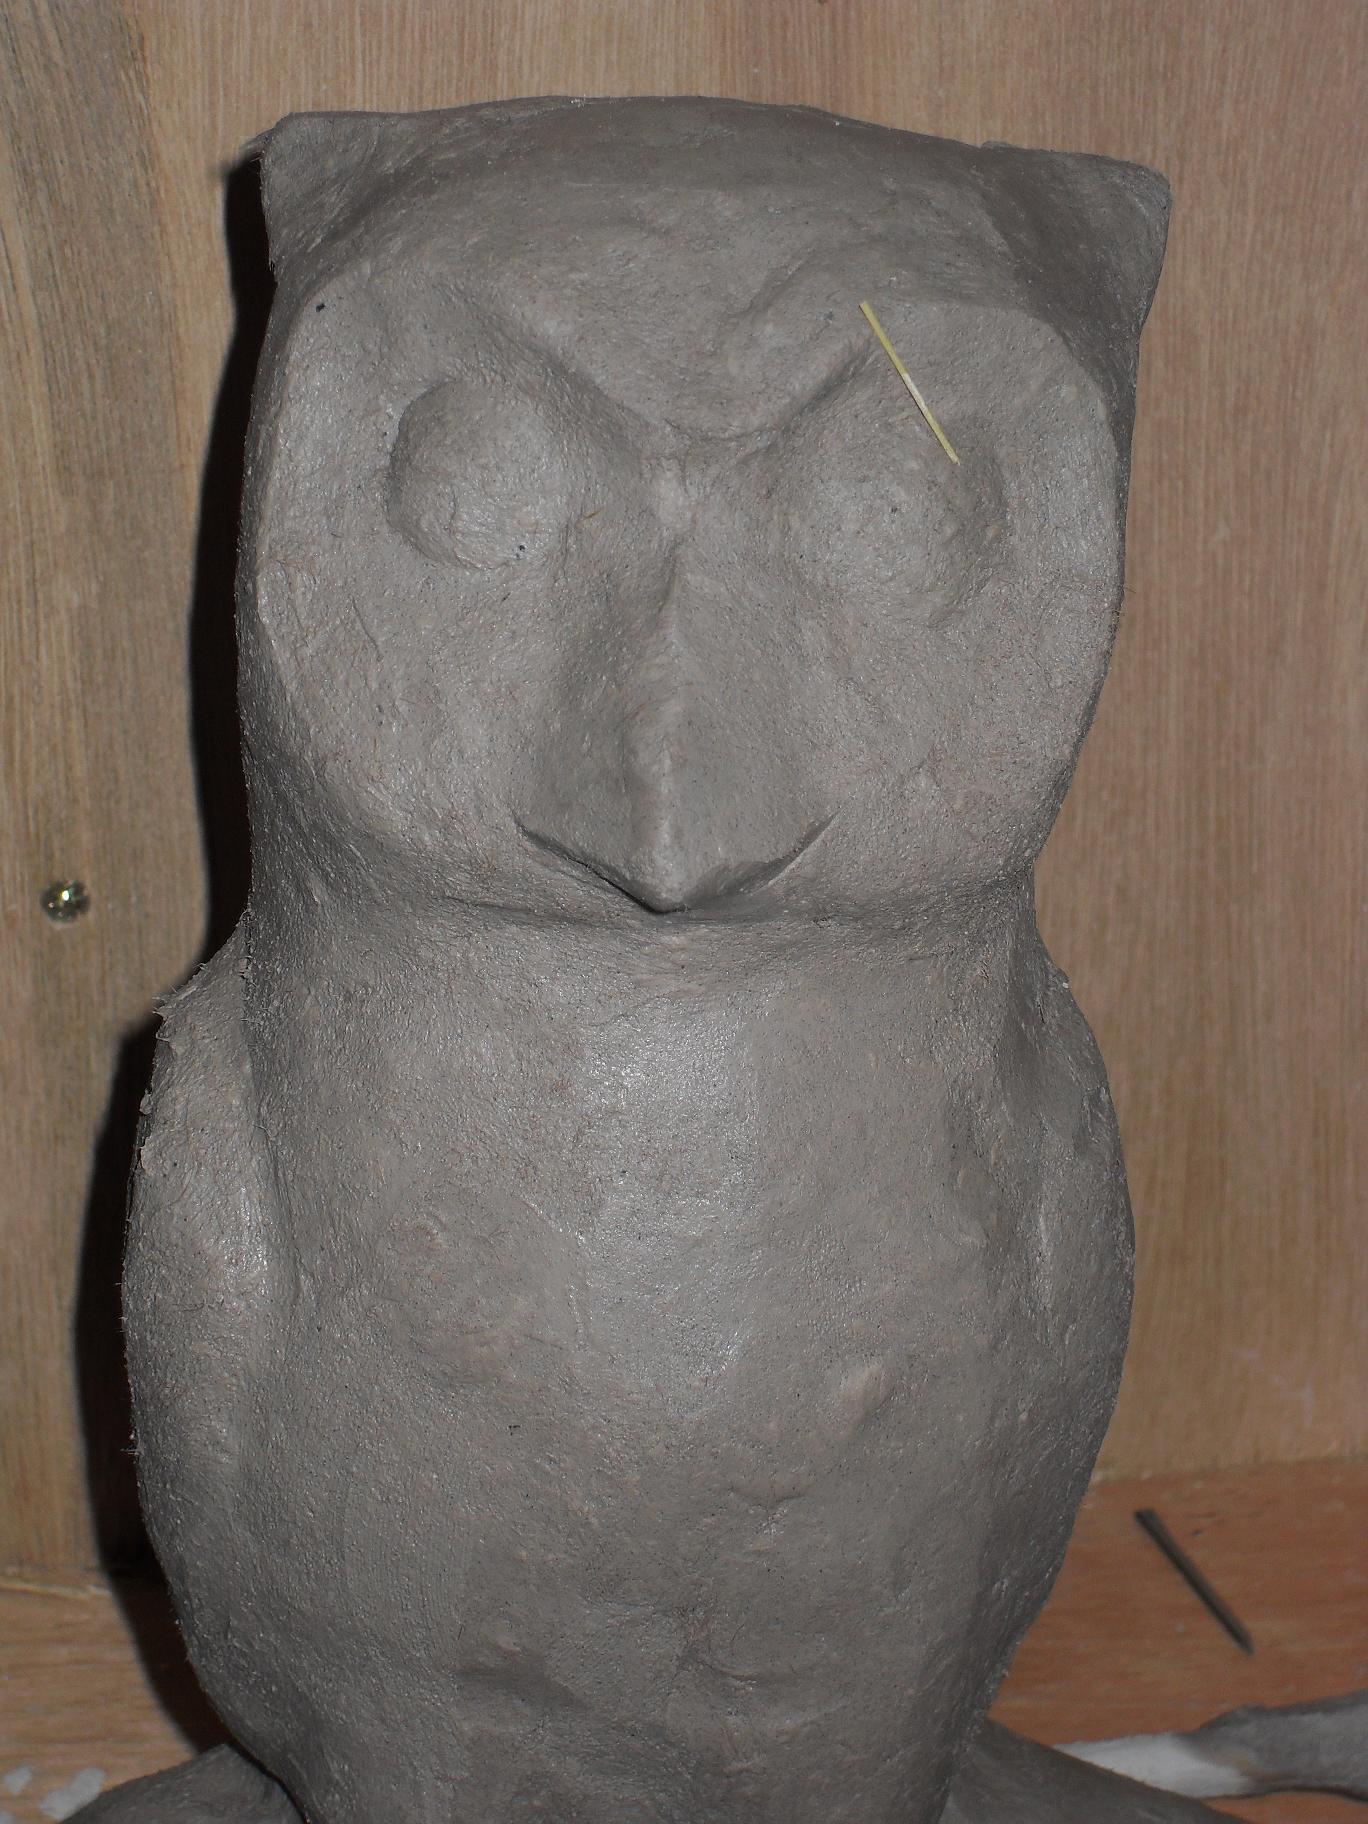 Lakshmi's owl